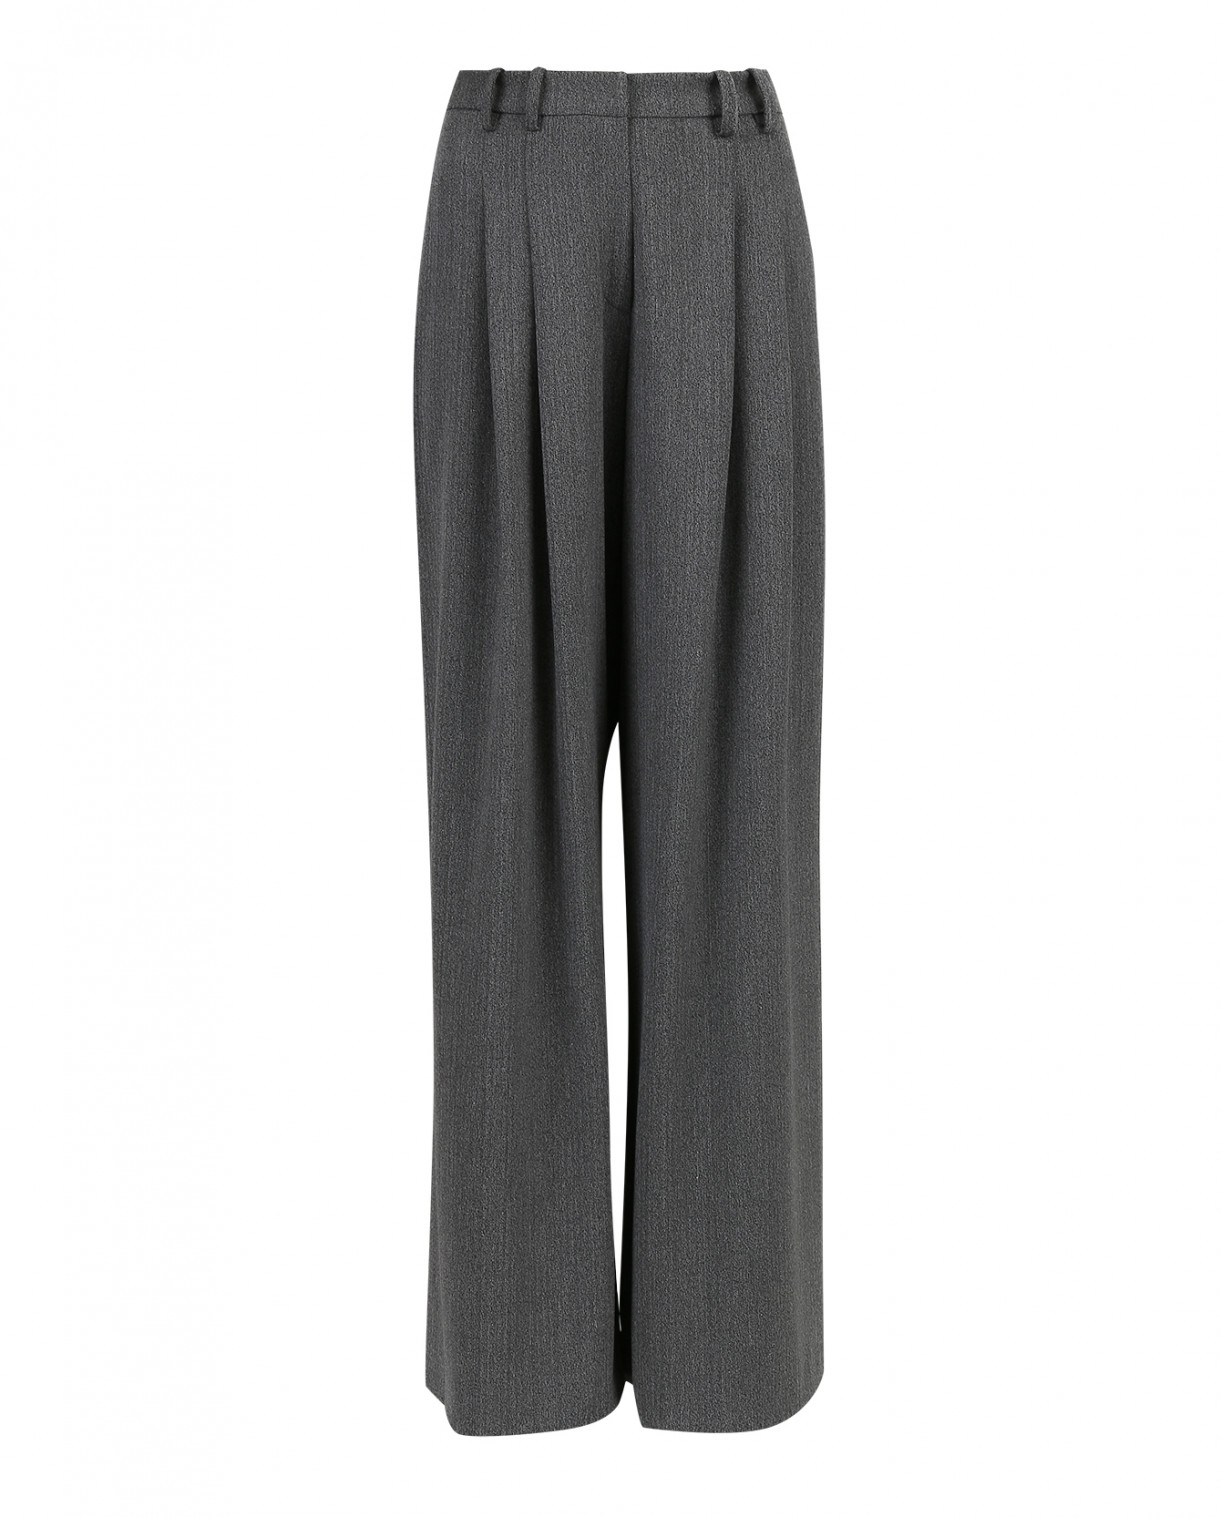 Широкие брюки клеш прямого фасона с высокой посадкой Kaos  –  Общий вид  – Цвет:  Серый